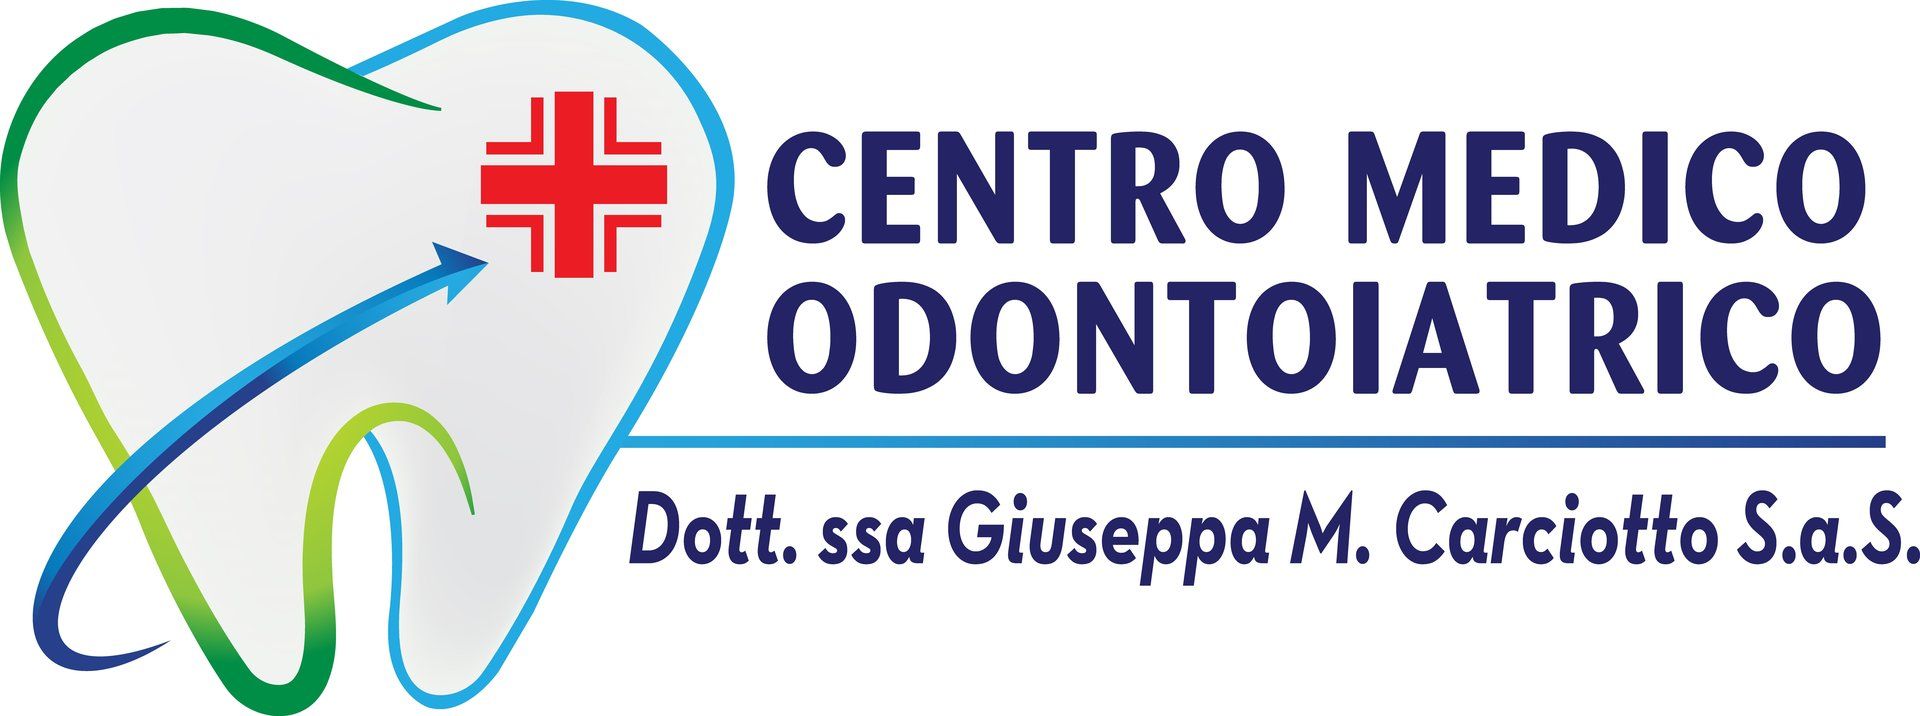 CENTRO MEDICO ODONTOIATRICO DOTT.SSA CARCIOTTO GIUSEPPA M. - LOGO